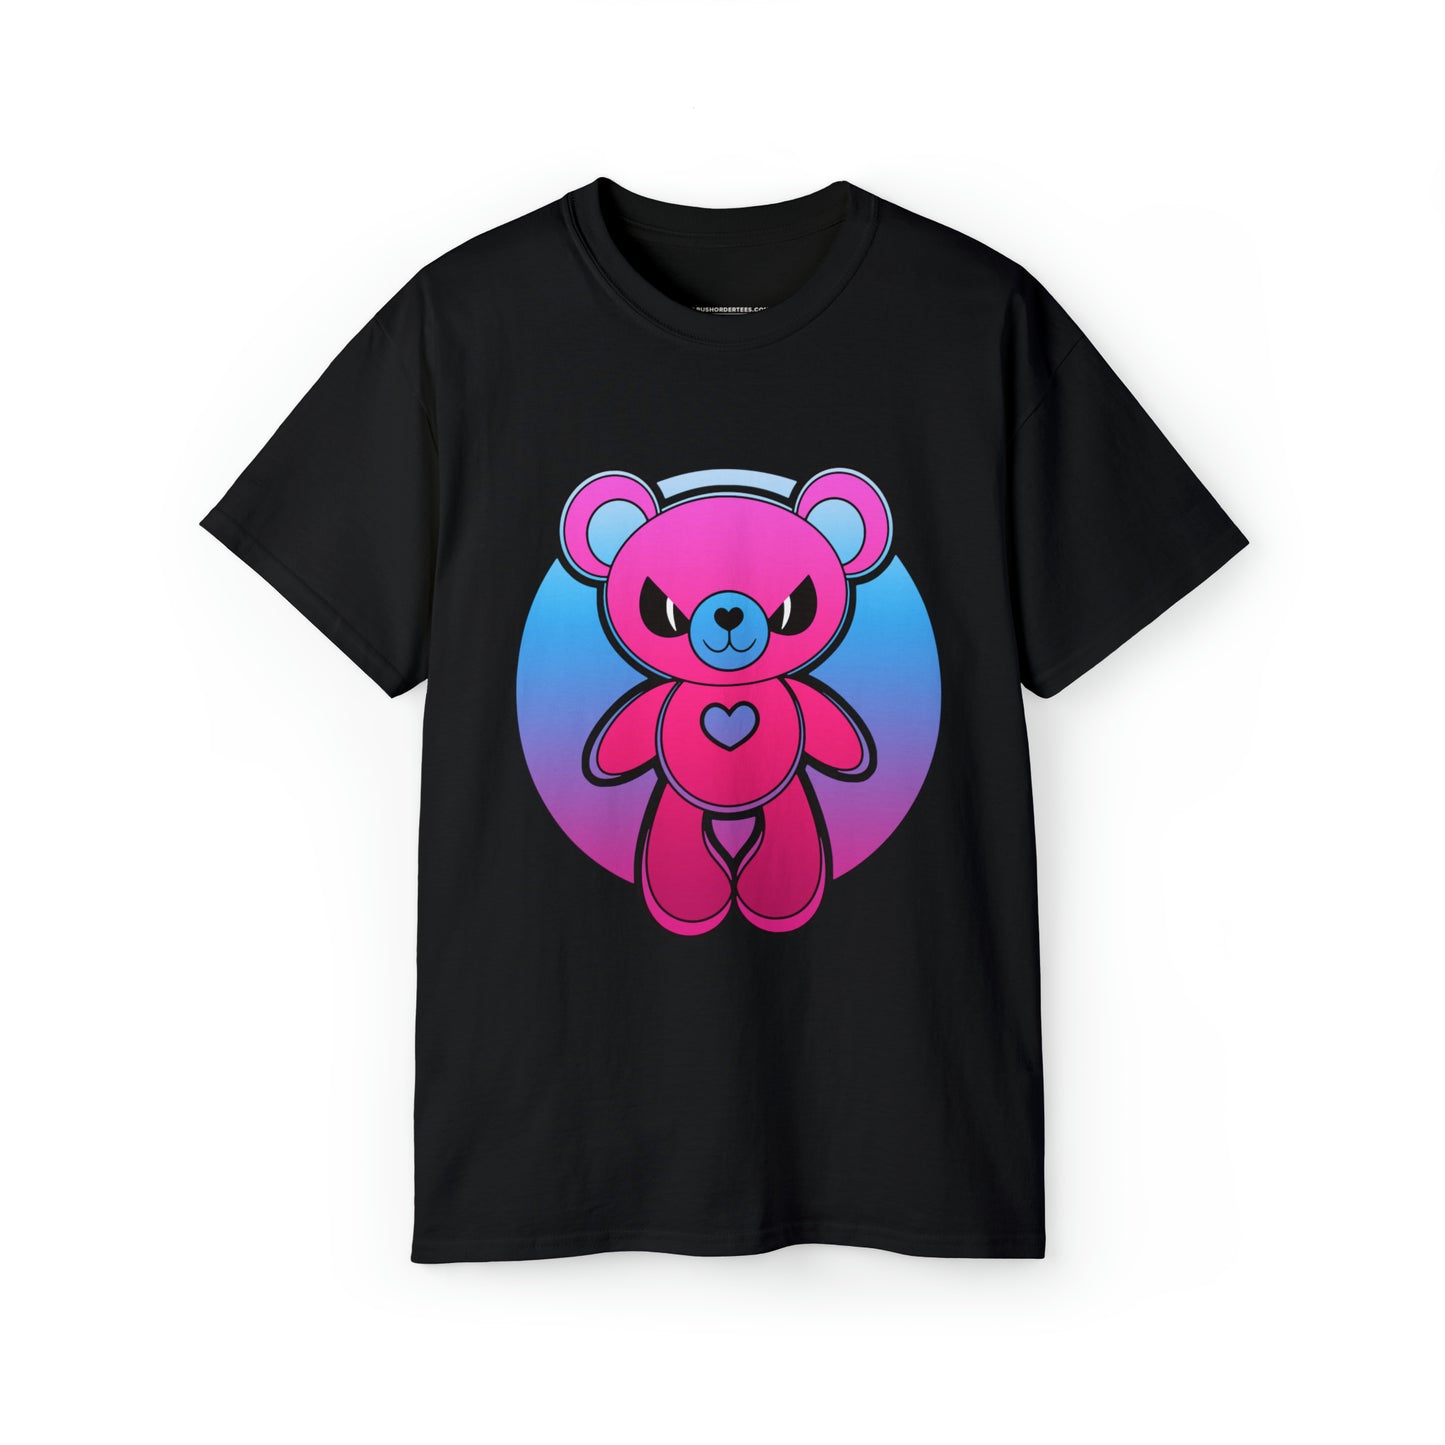 Cyber Teddy Shirt